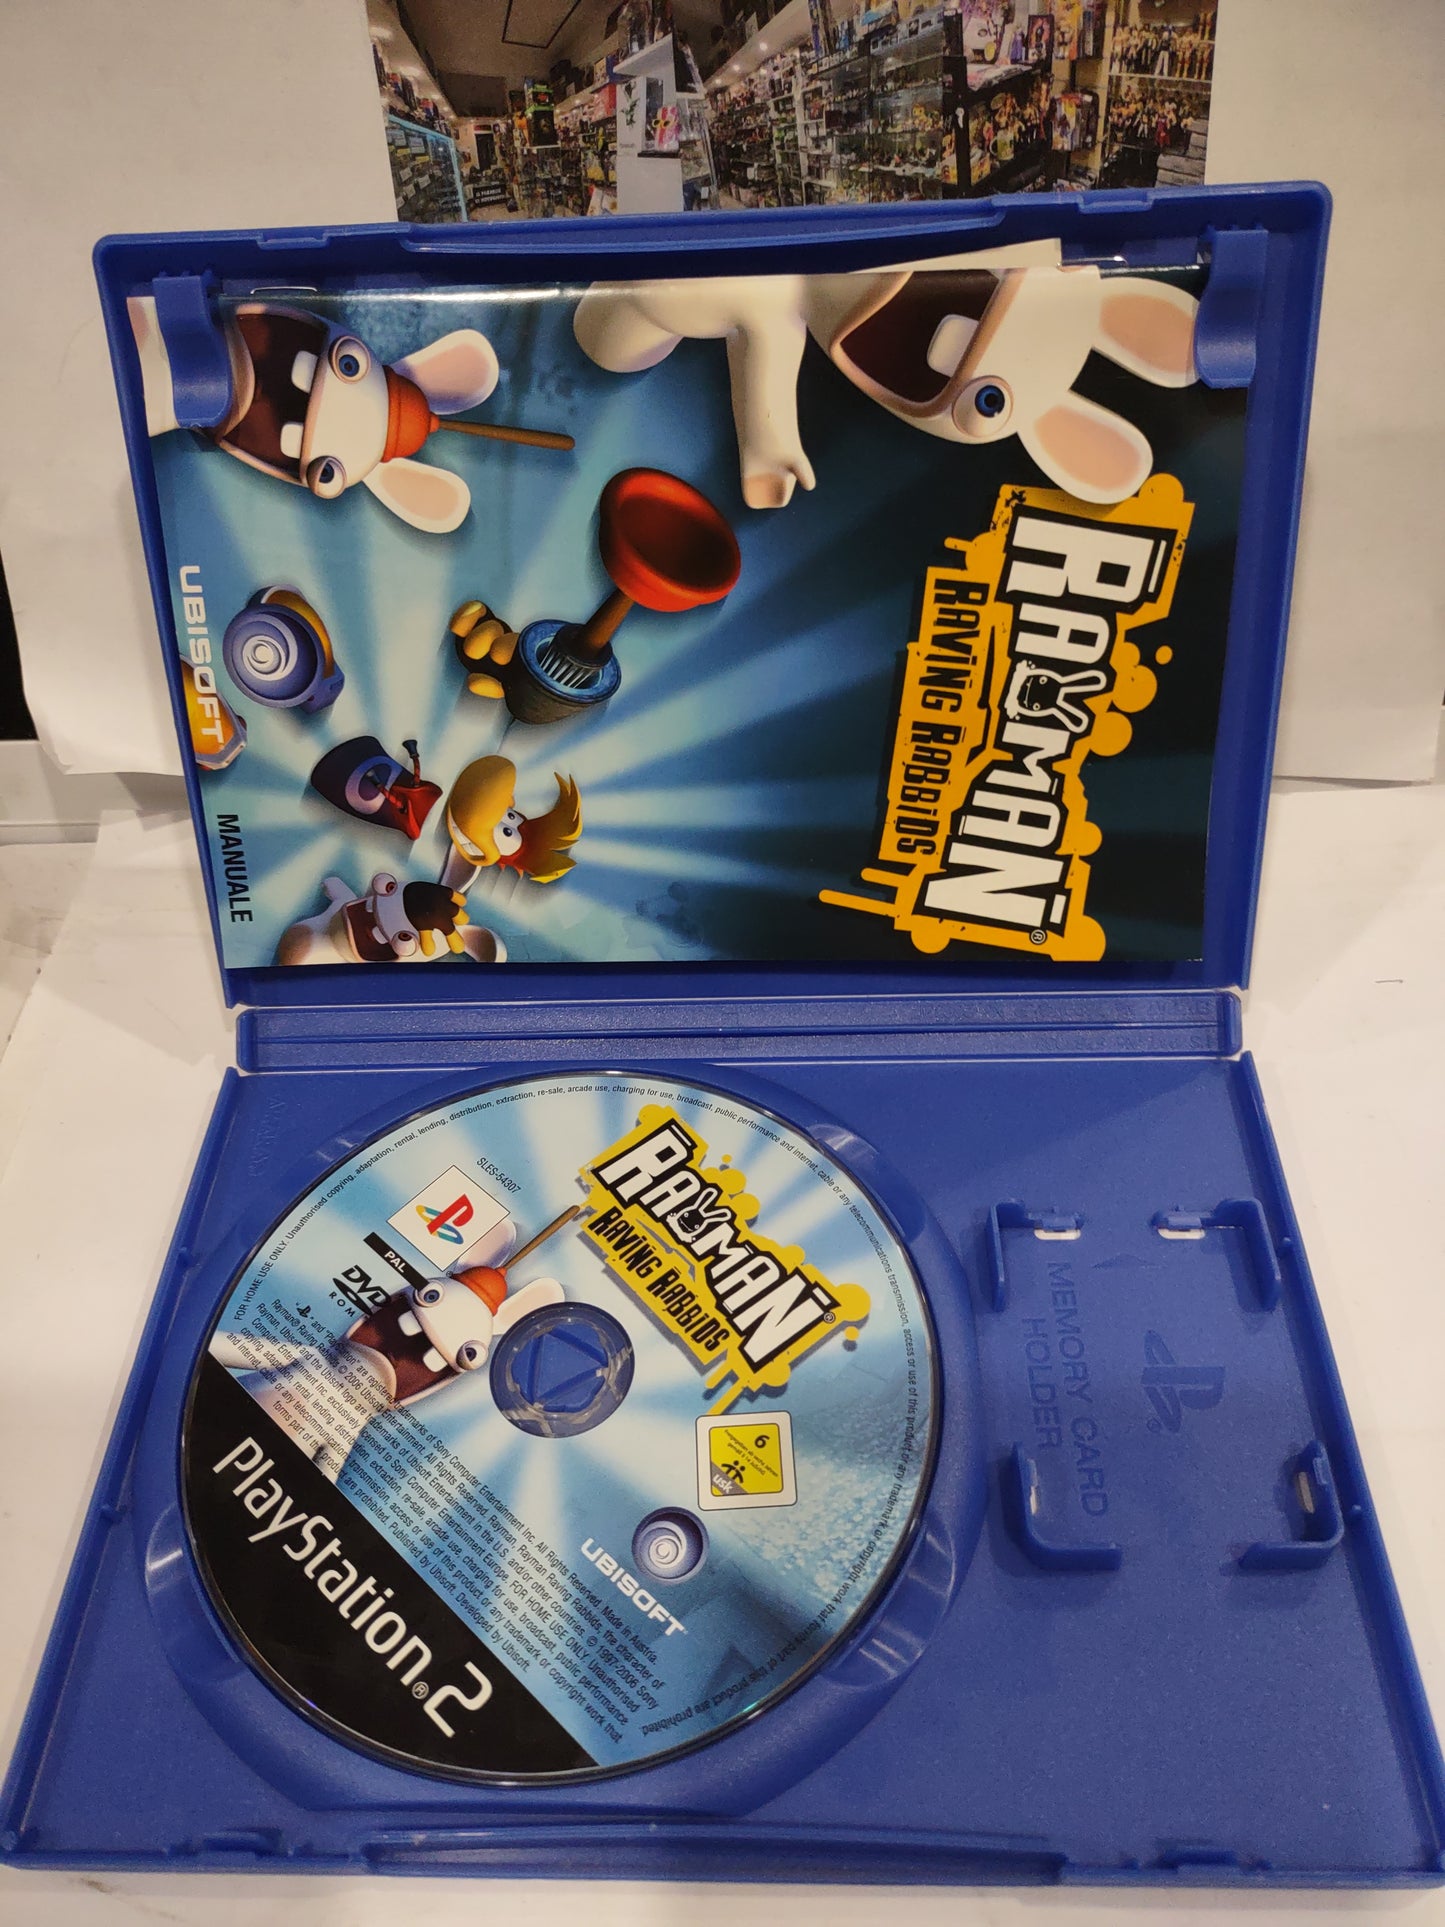 Gioco PlayStation PS2 Rayman raving rabbids